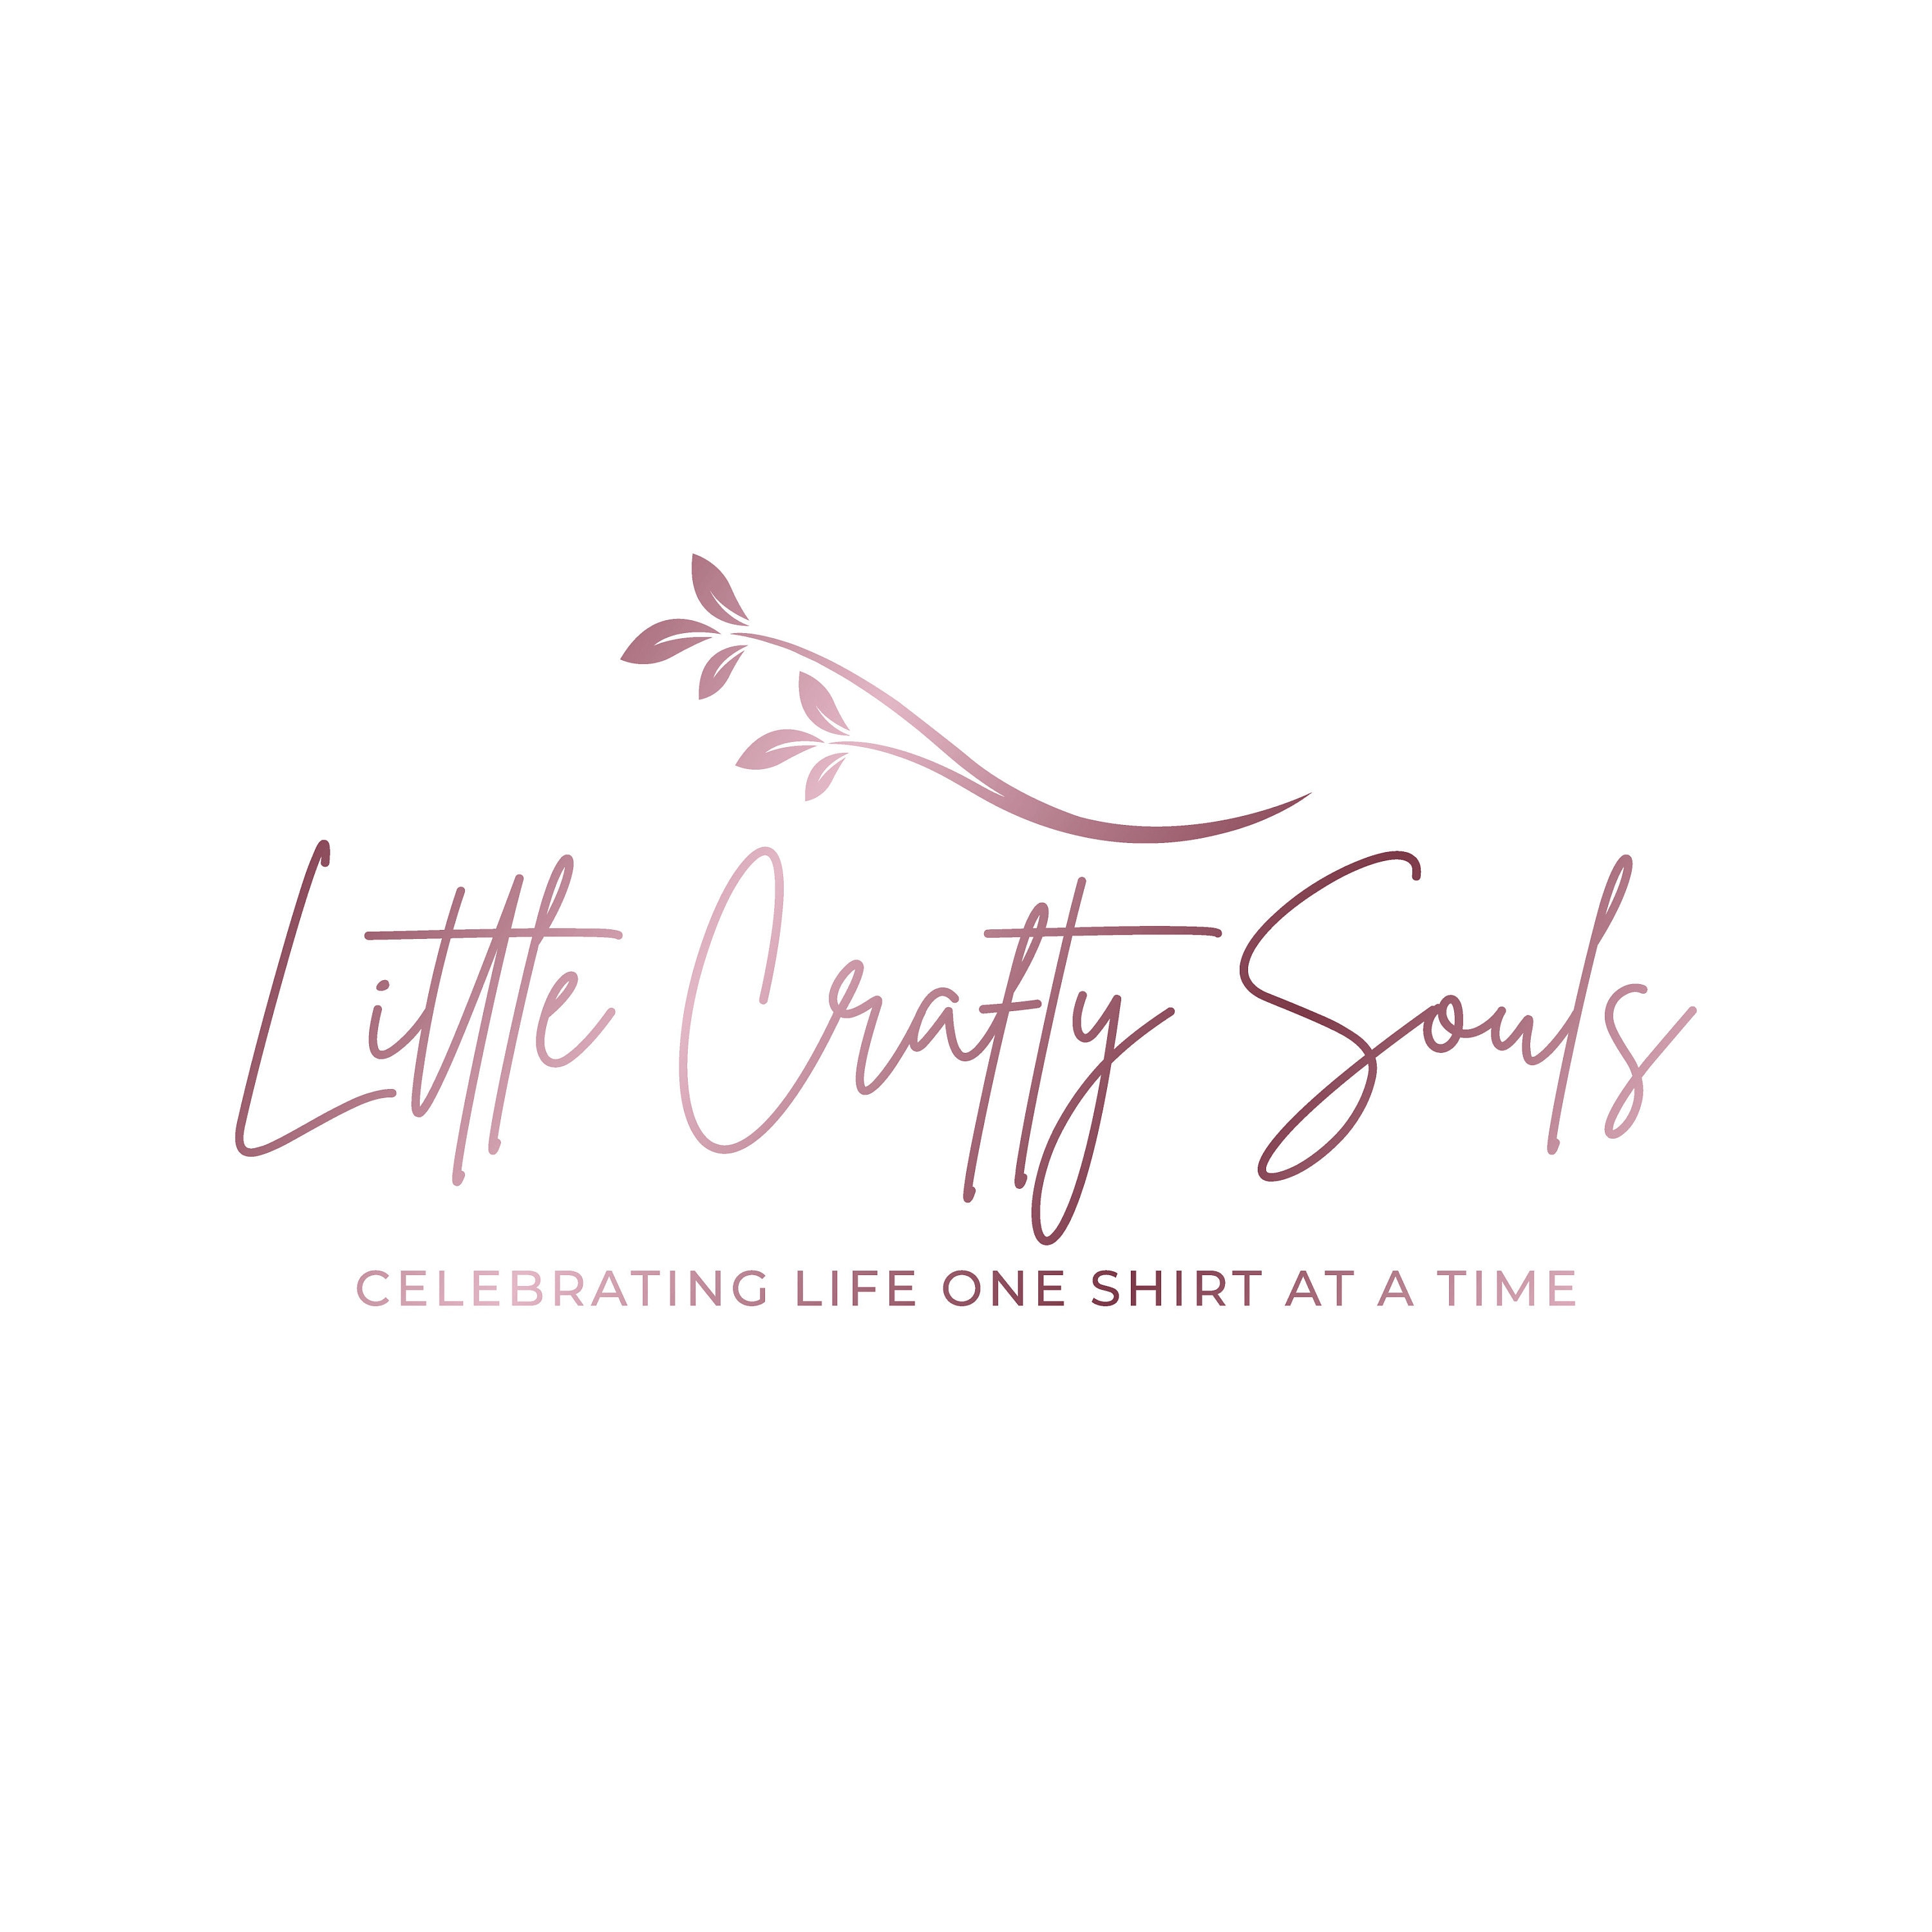 LittleCraftySouls - Etsy UK